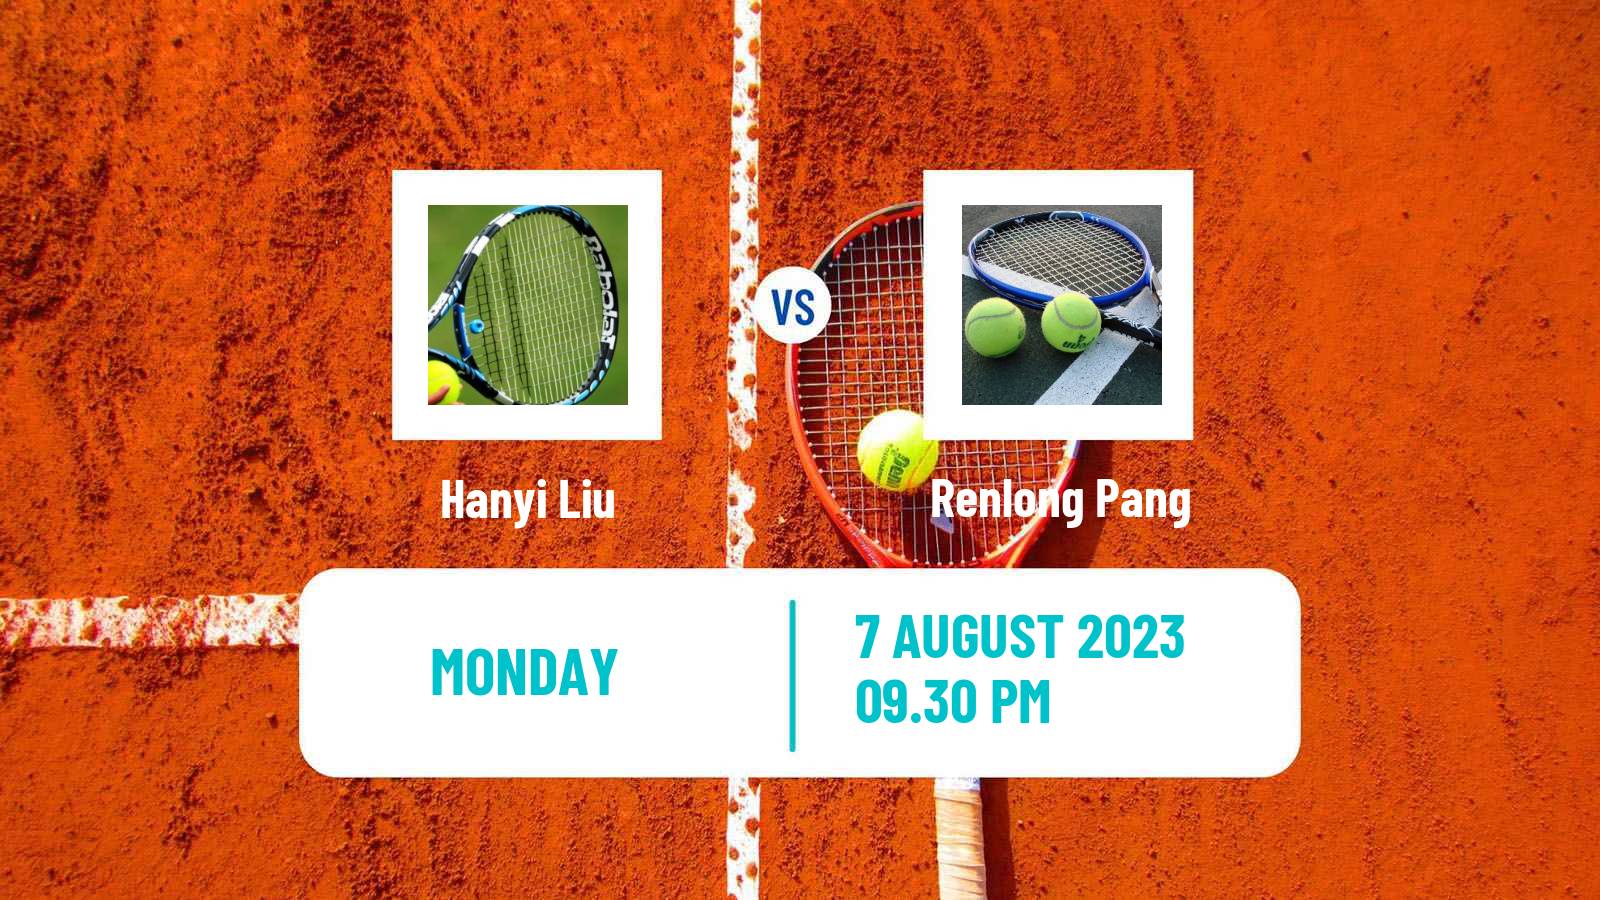 Tennis ITF M25 Baotou Men 2023 Hanyi Liu - Renlong Pang